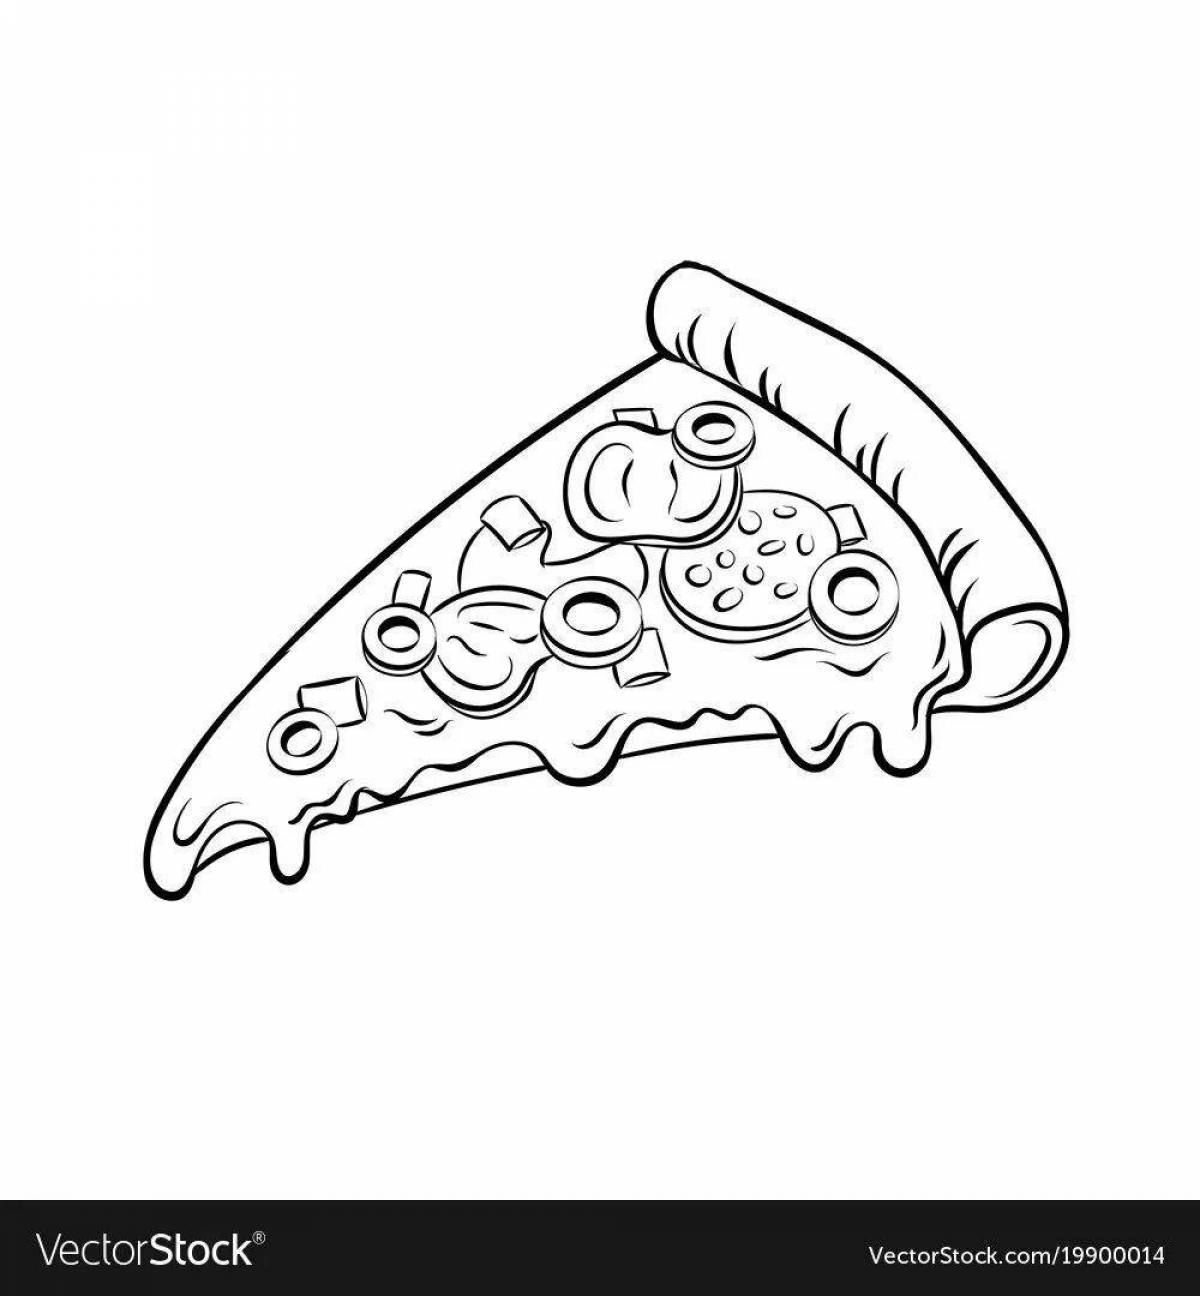 Fun coloring pizza slice